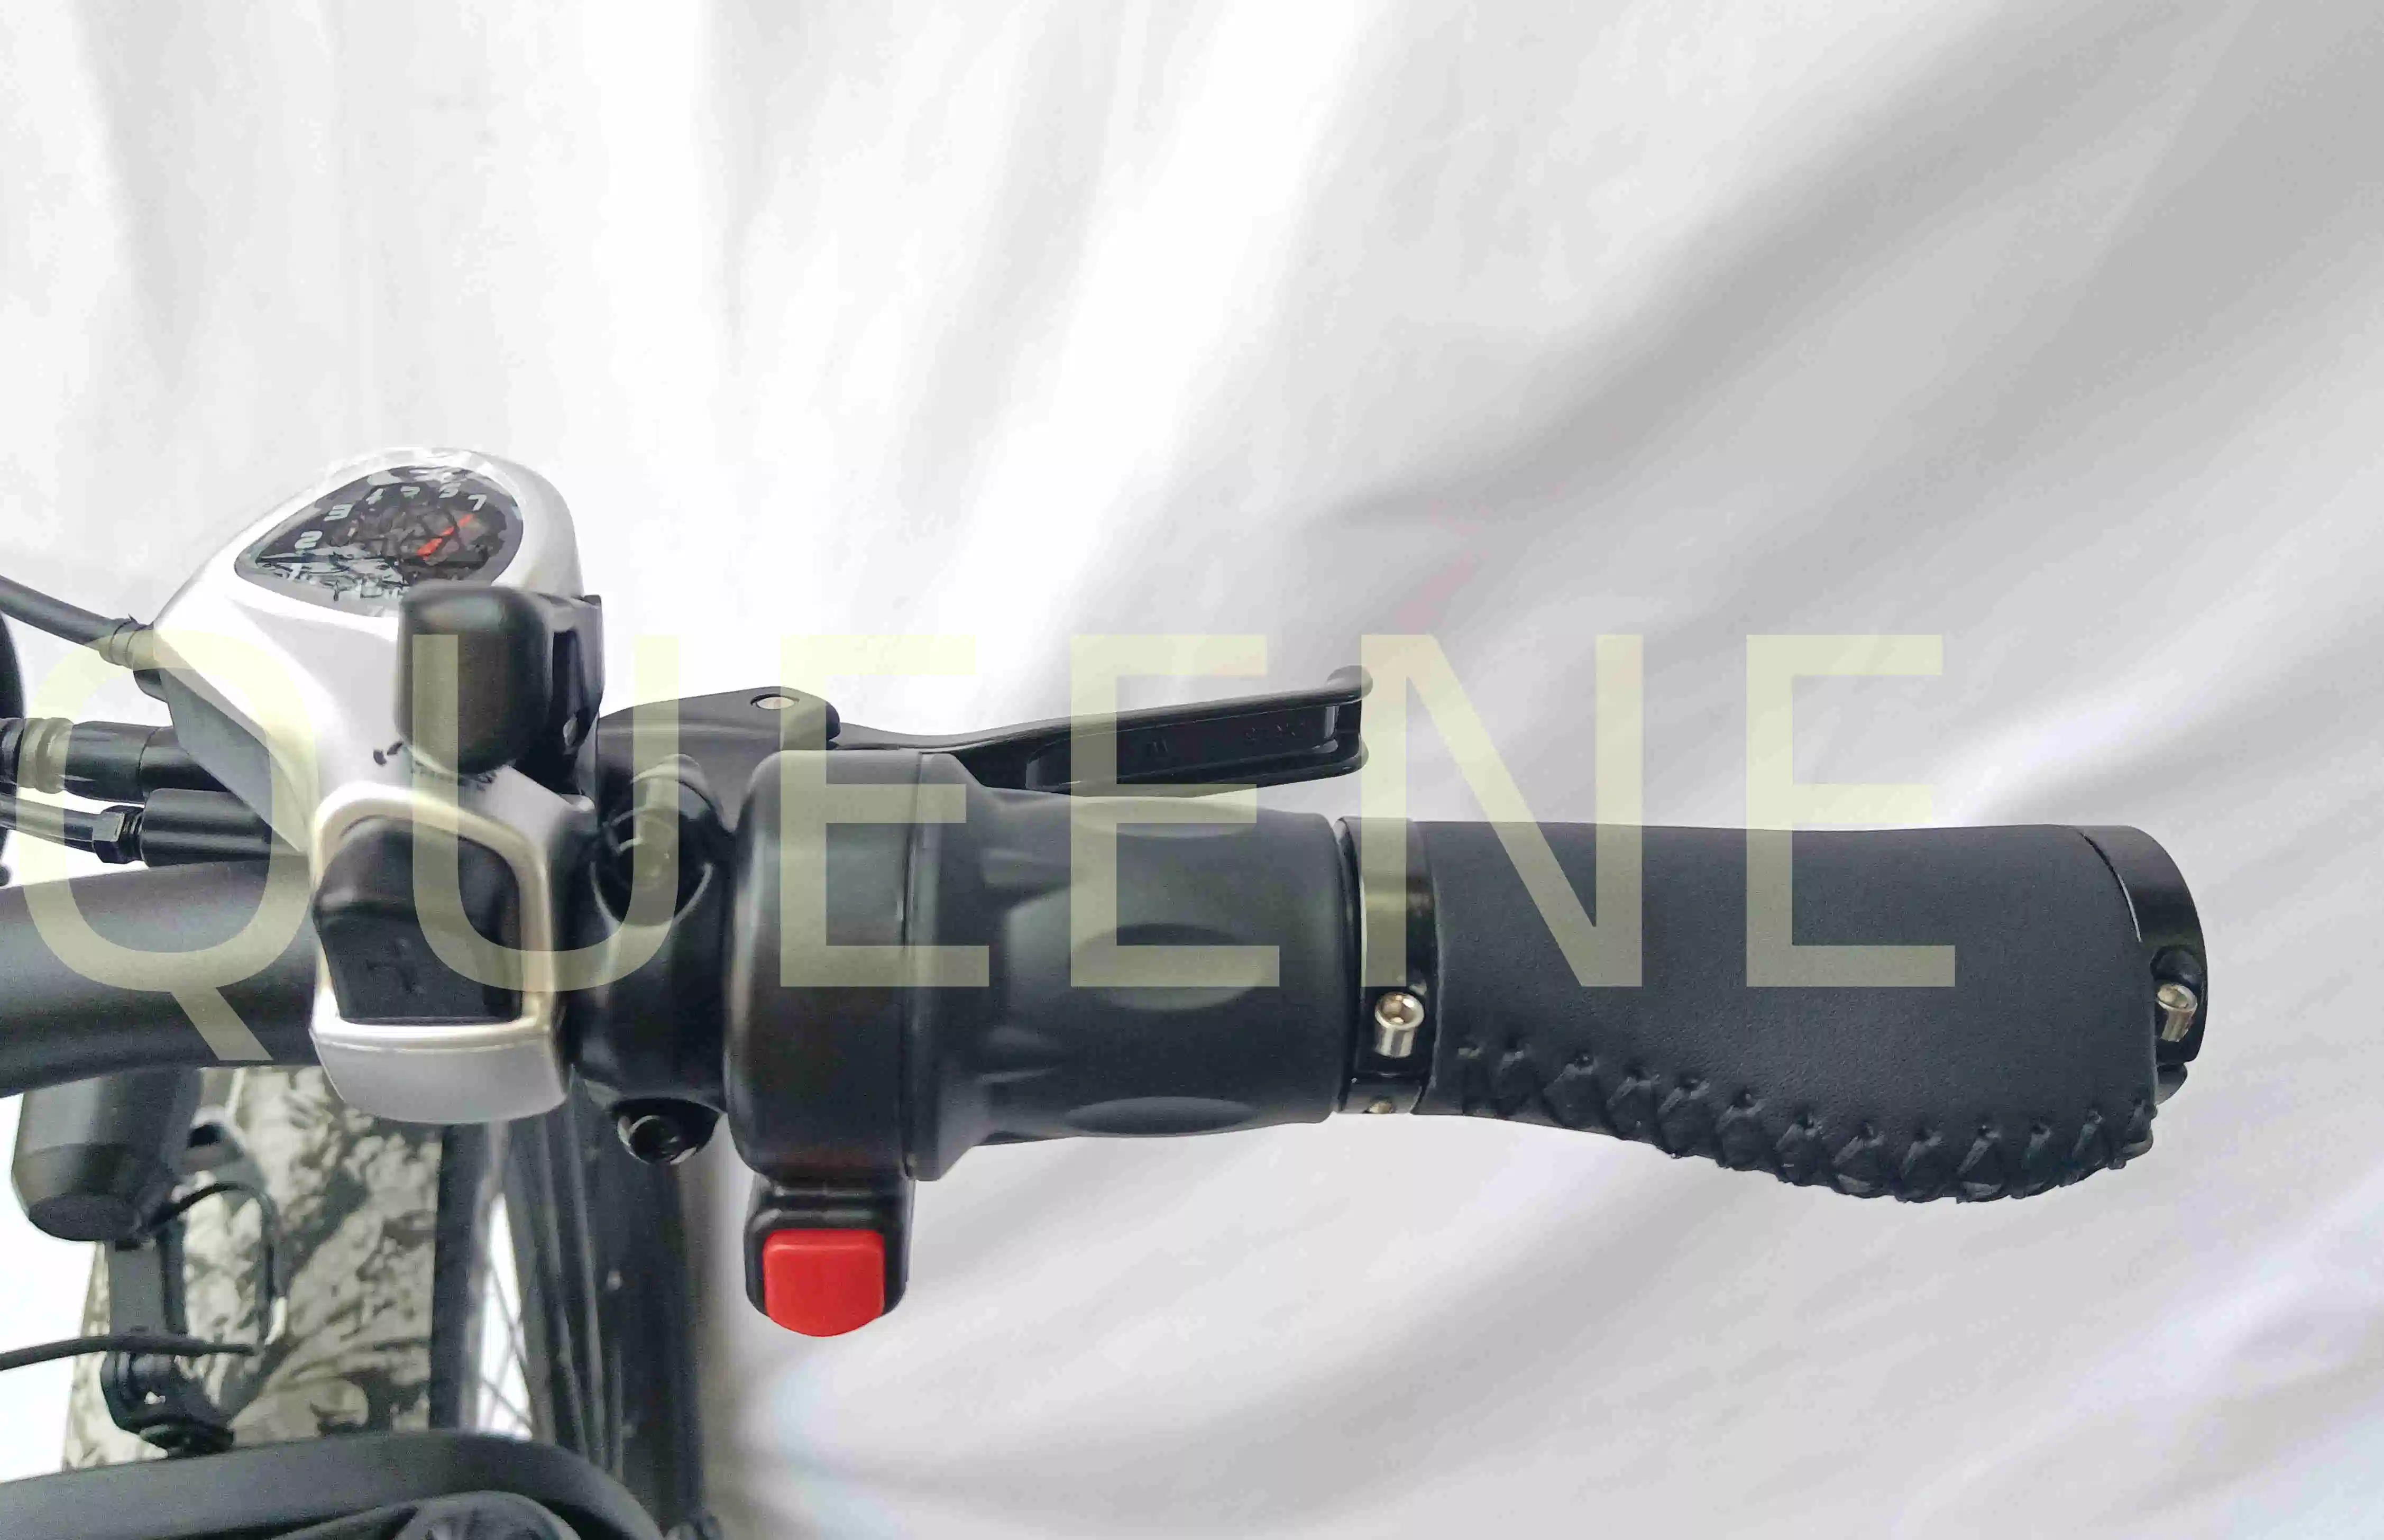 Queene/ Camo Top Configuration 26 pouces Vélo électrique à pneus gras Batterie Samsung 48V20ah VTT Ebike Puissant Vélo de montagne électrique 1000W pour la chasse